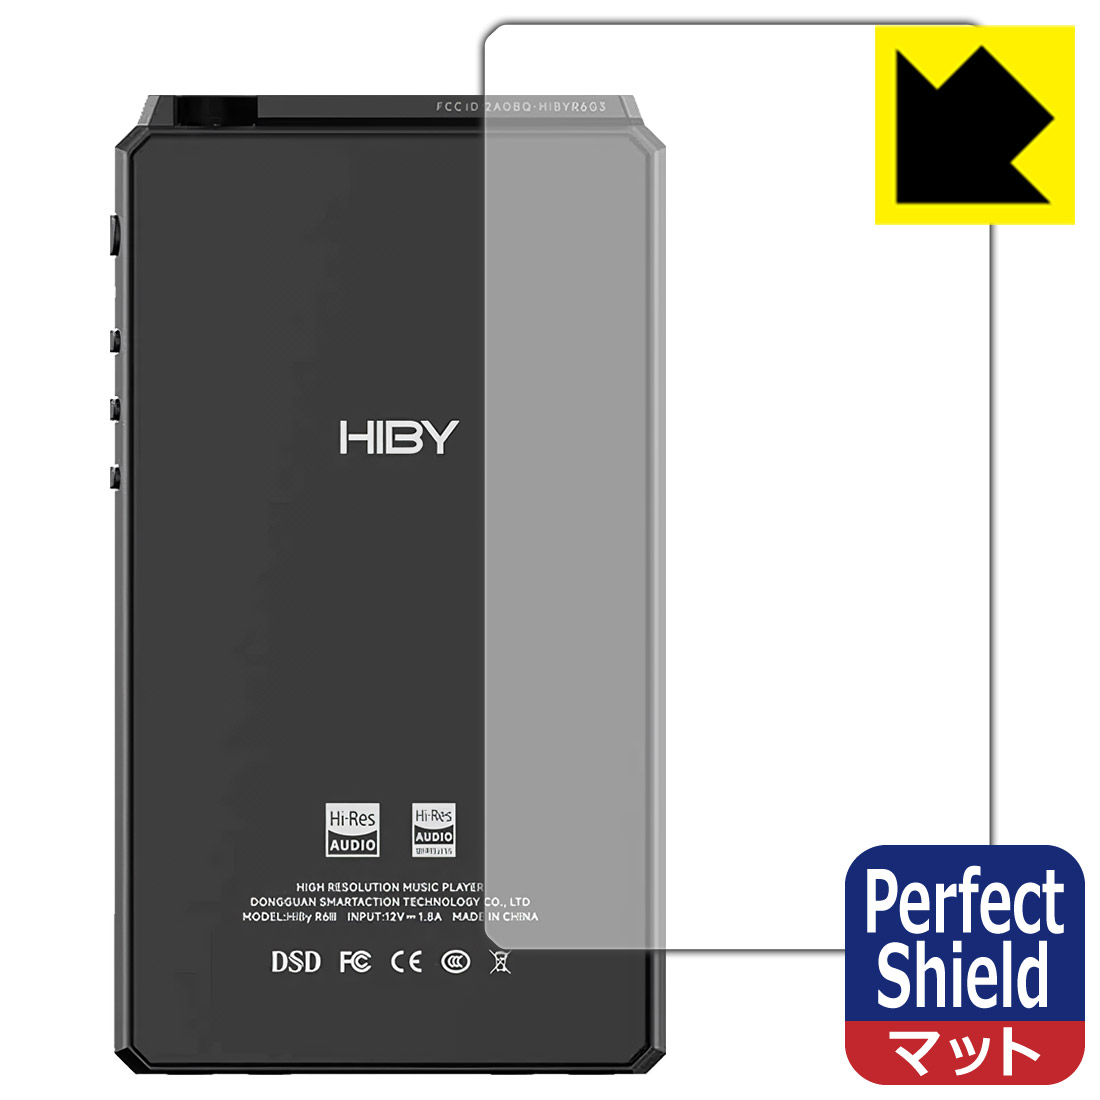 【スーパーSALE 10%OFF】Perfect Shield【反射低減】保護フィルム HiBy R6 III (背面用) 日本製 自社製造直販